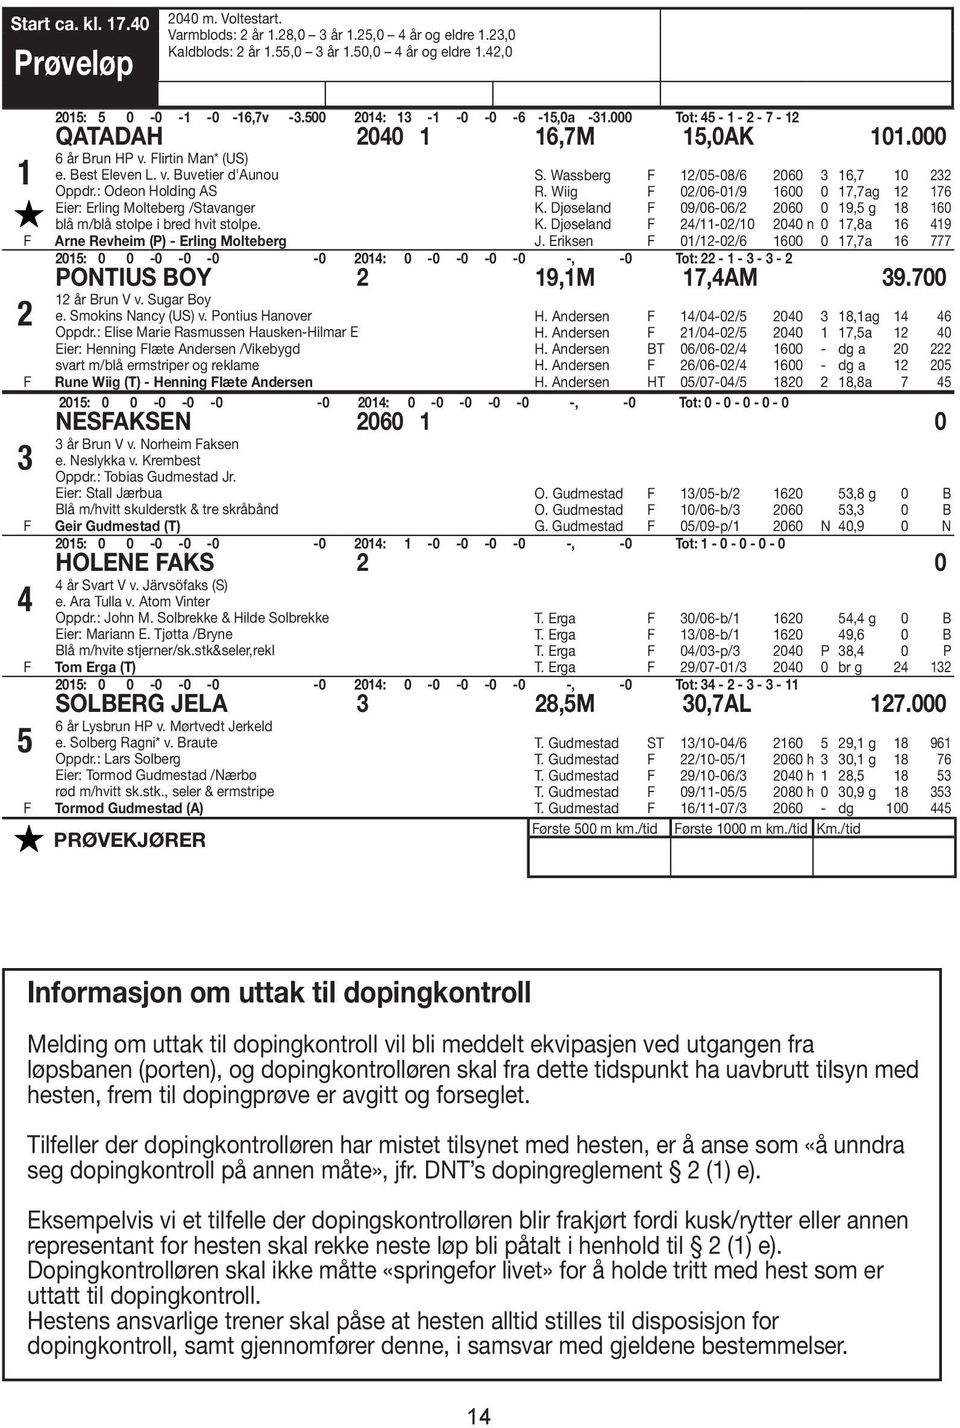 : Odeon Holding AS Eier: Erling Molteberg /Stavanger blå m/blå stolpe i bred hvit stolpe. Arne Revheim (P) - Erling Molteberg S. Wassberg 12/05-08/6 2060 3 16,7 10 232 R.